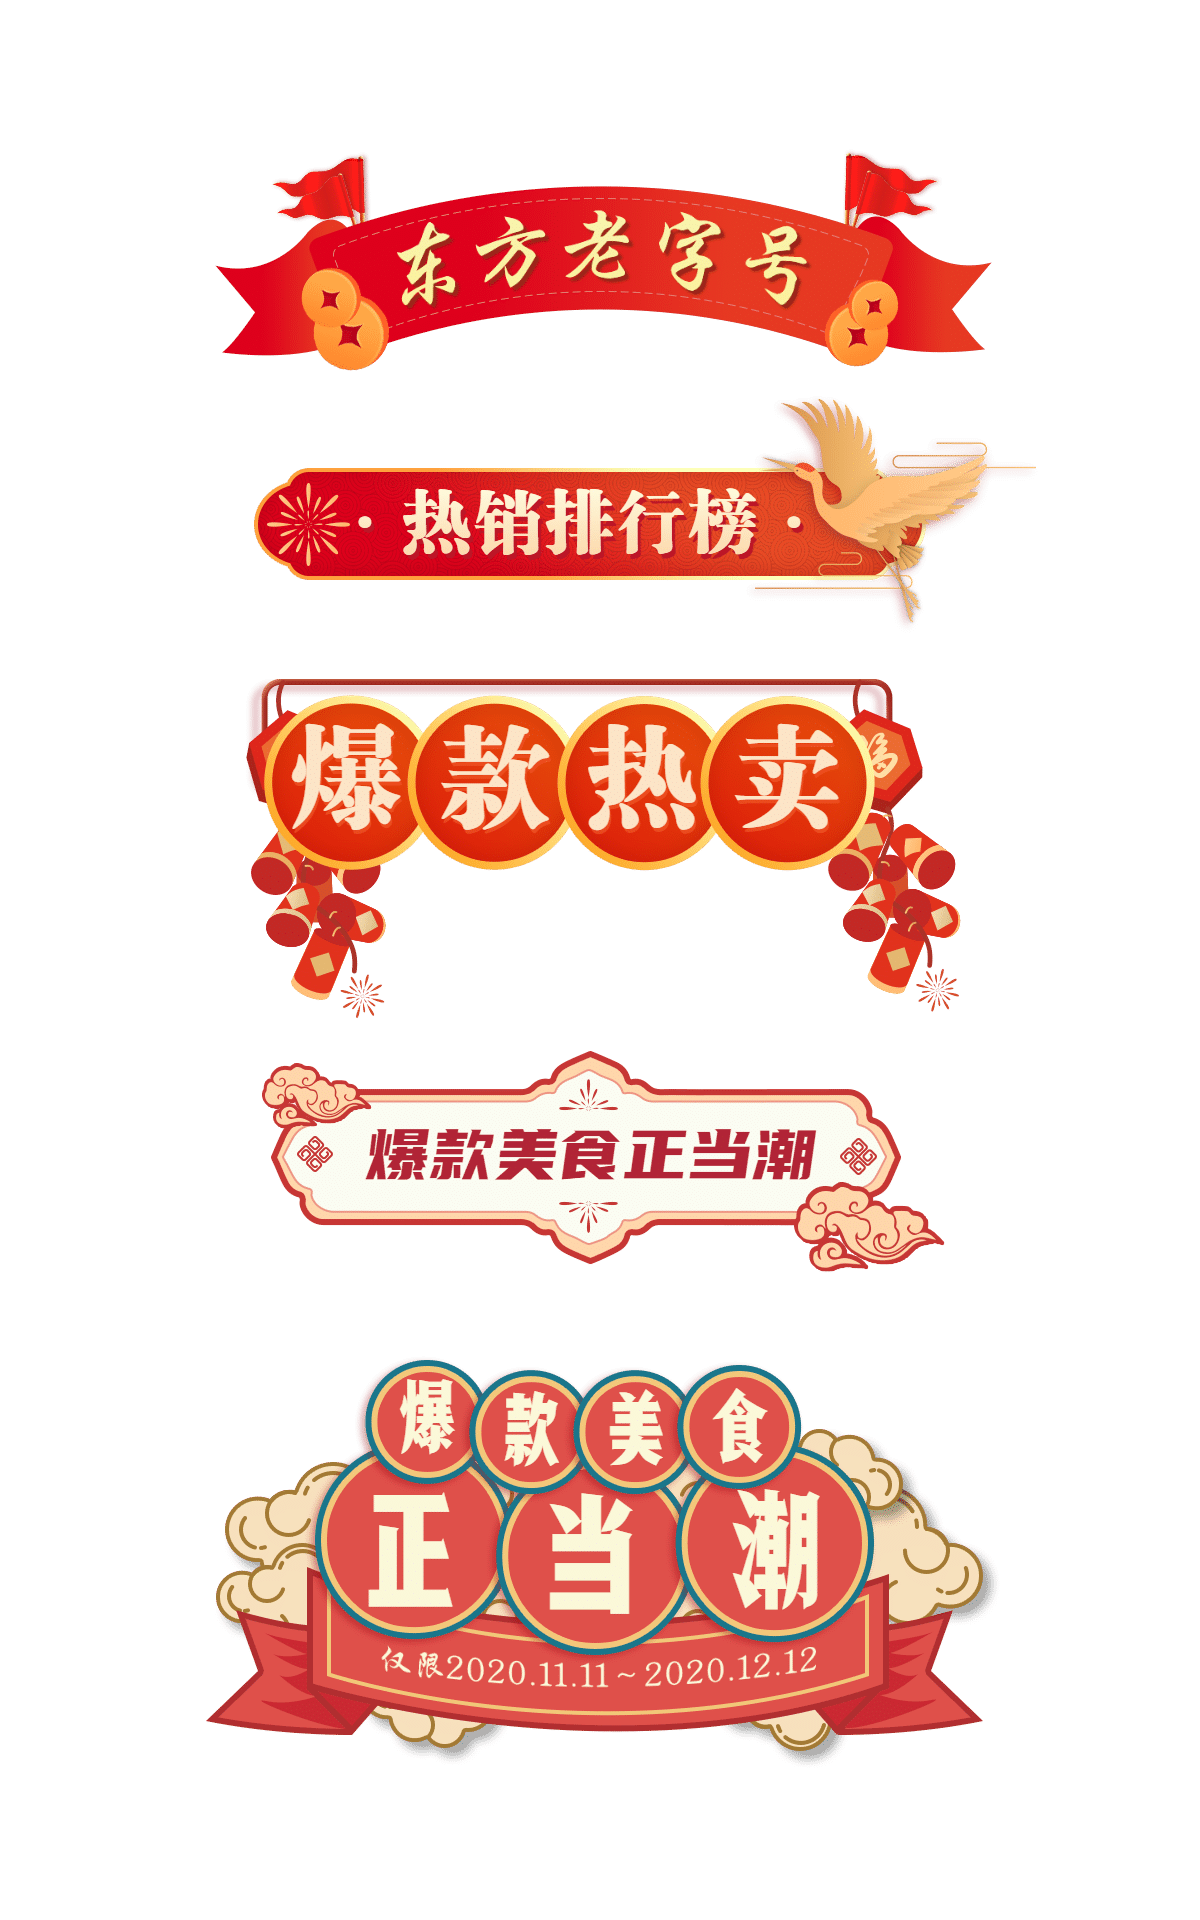 中国风导航栏元素组合海报